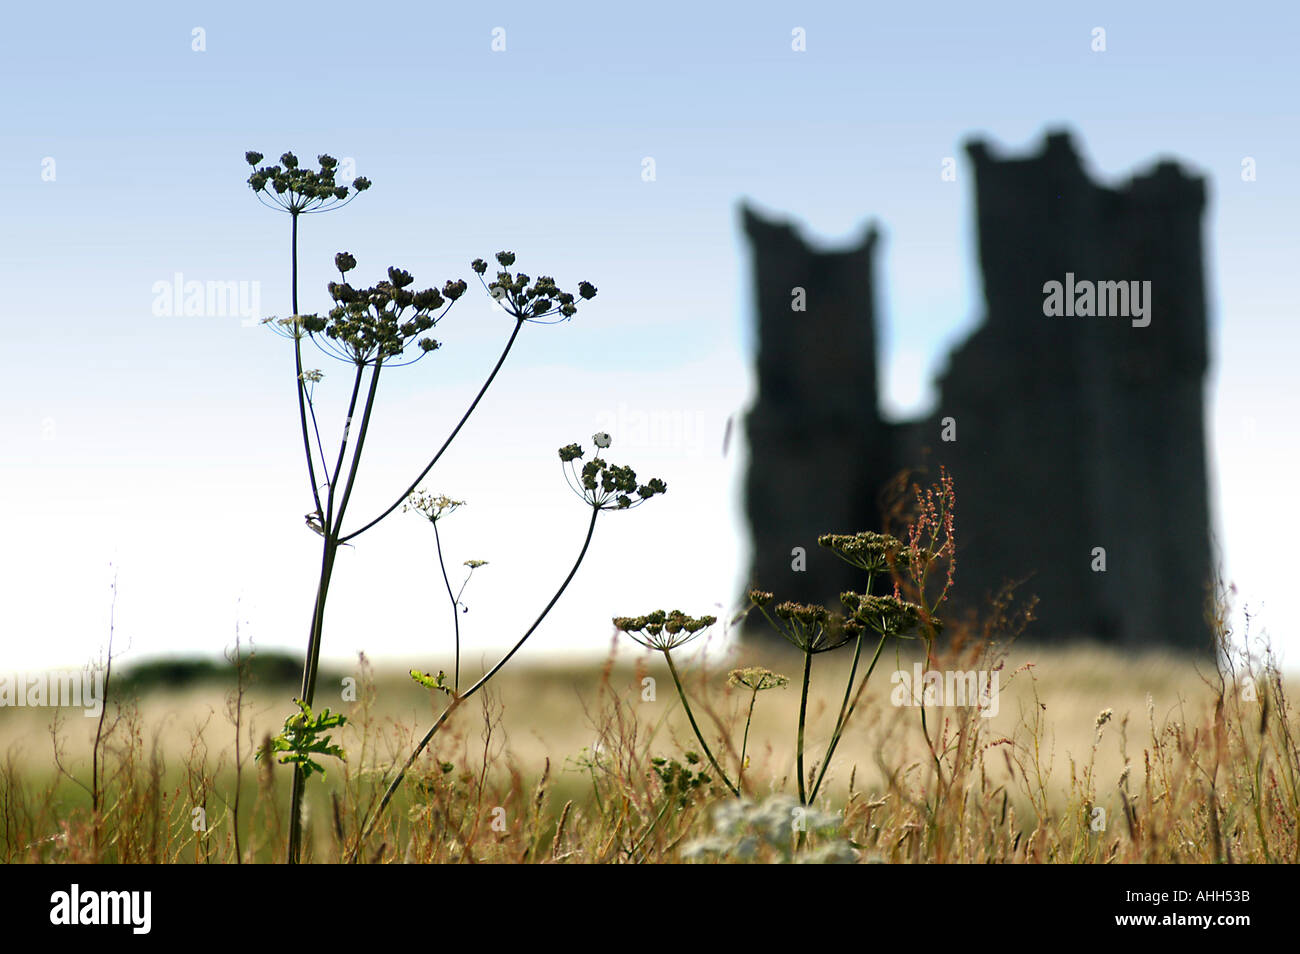 Gliederung der Dunstanburgh Castle in der Silhouette, Stängelpflanzen Samenköpfe im Vordergrund Stockfoto